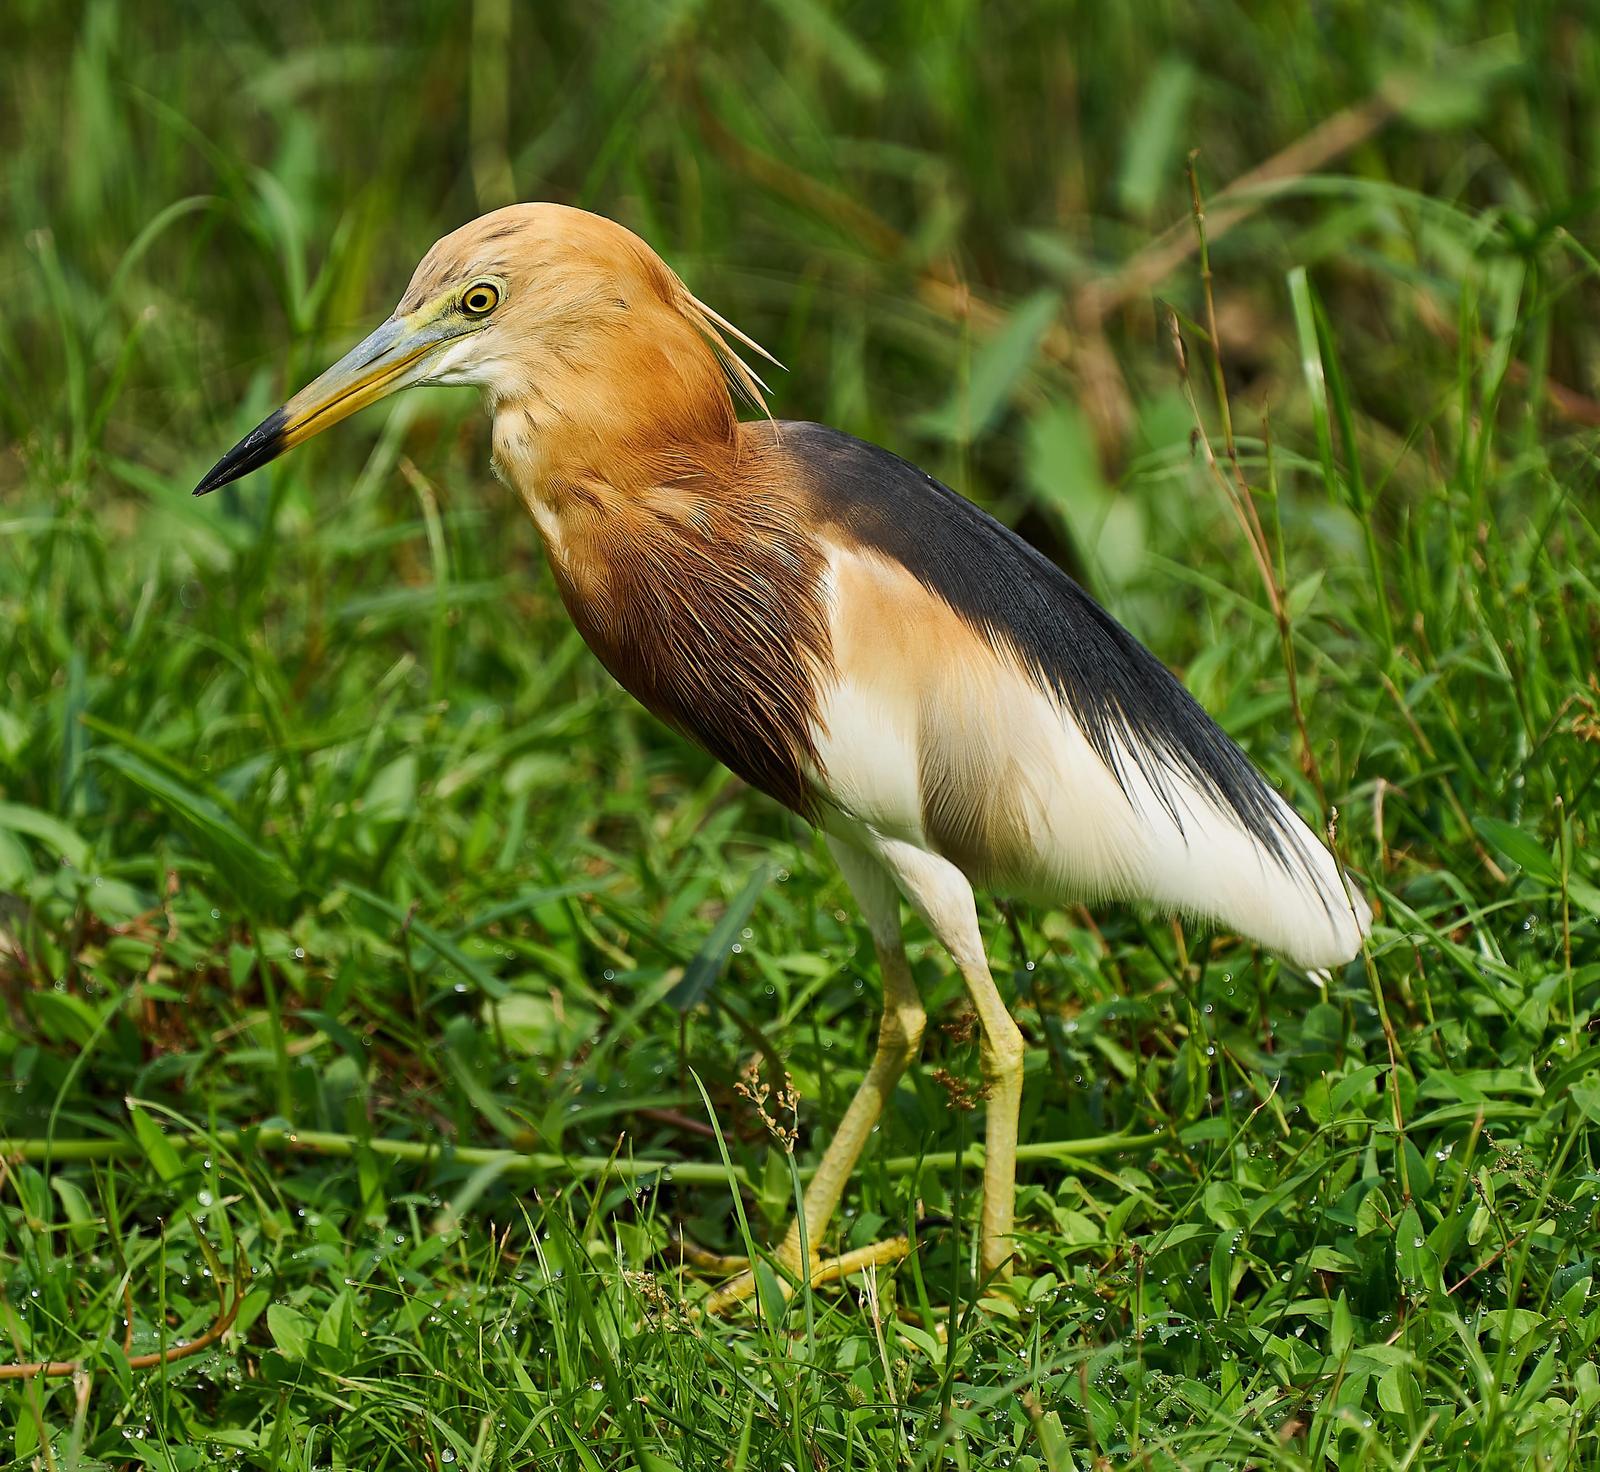 Javan Pond-Heron Photo by Steven Cheong